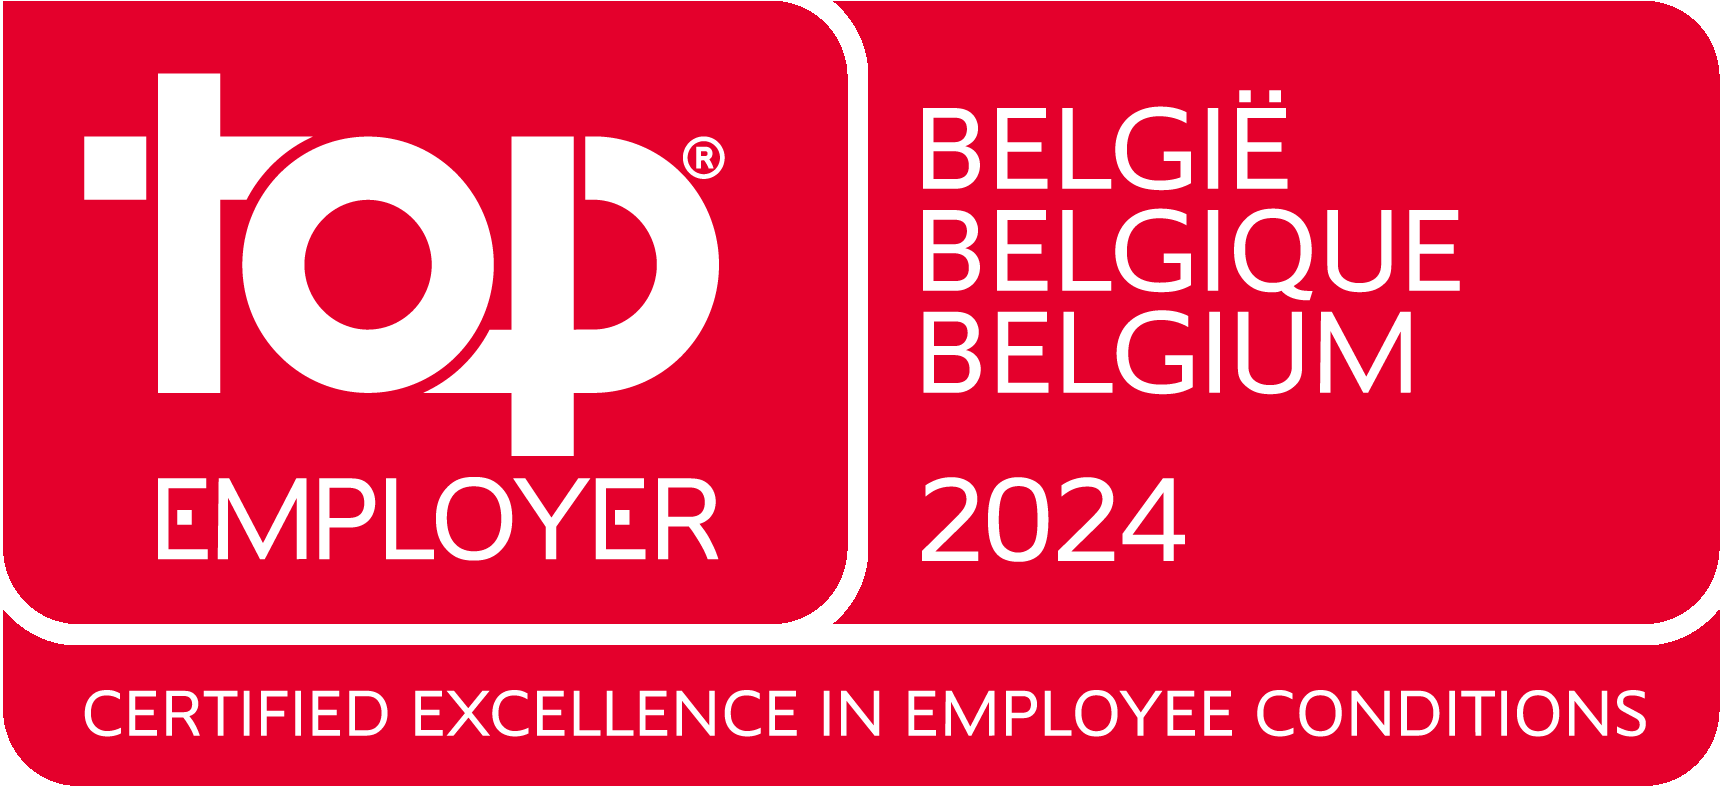 top employer Belgium 2024